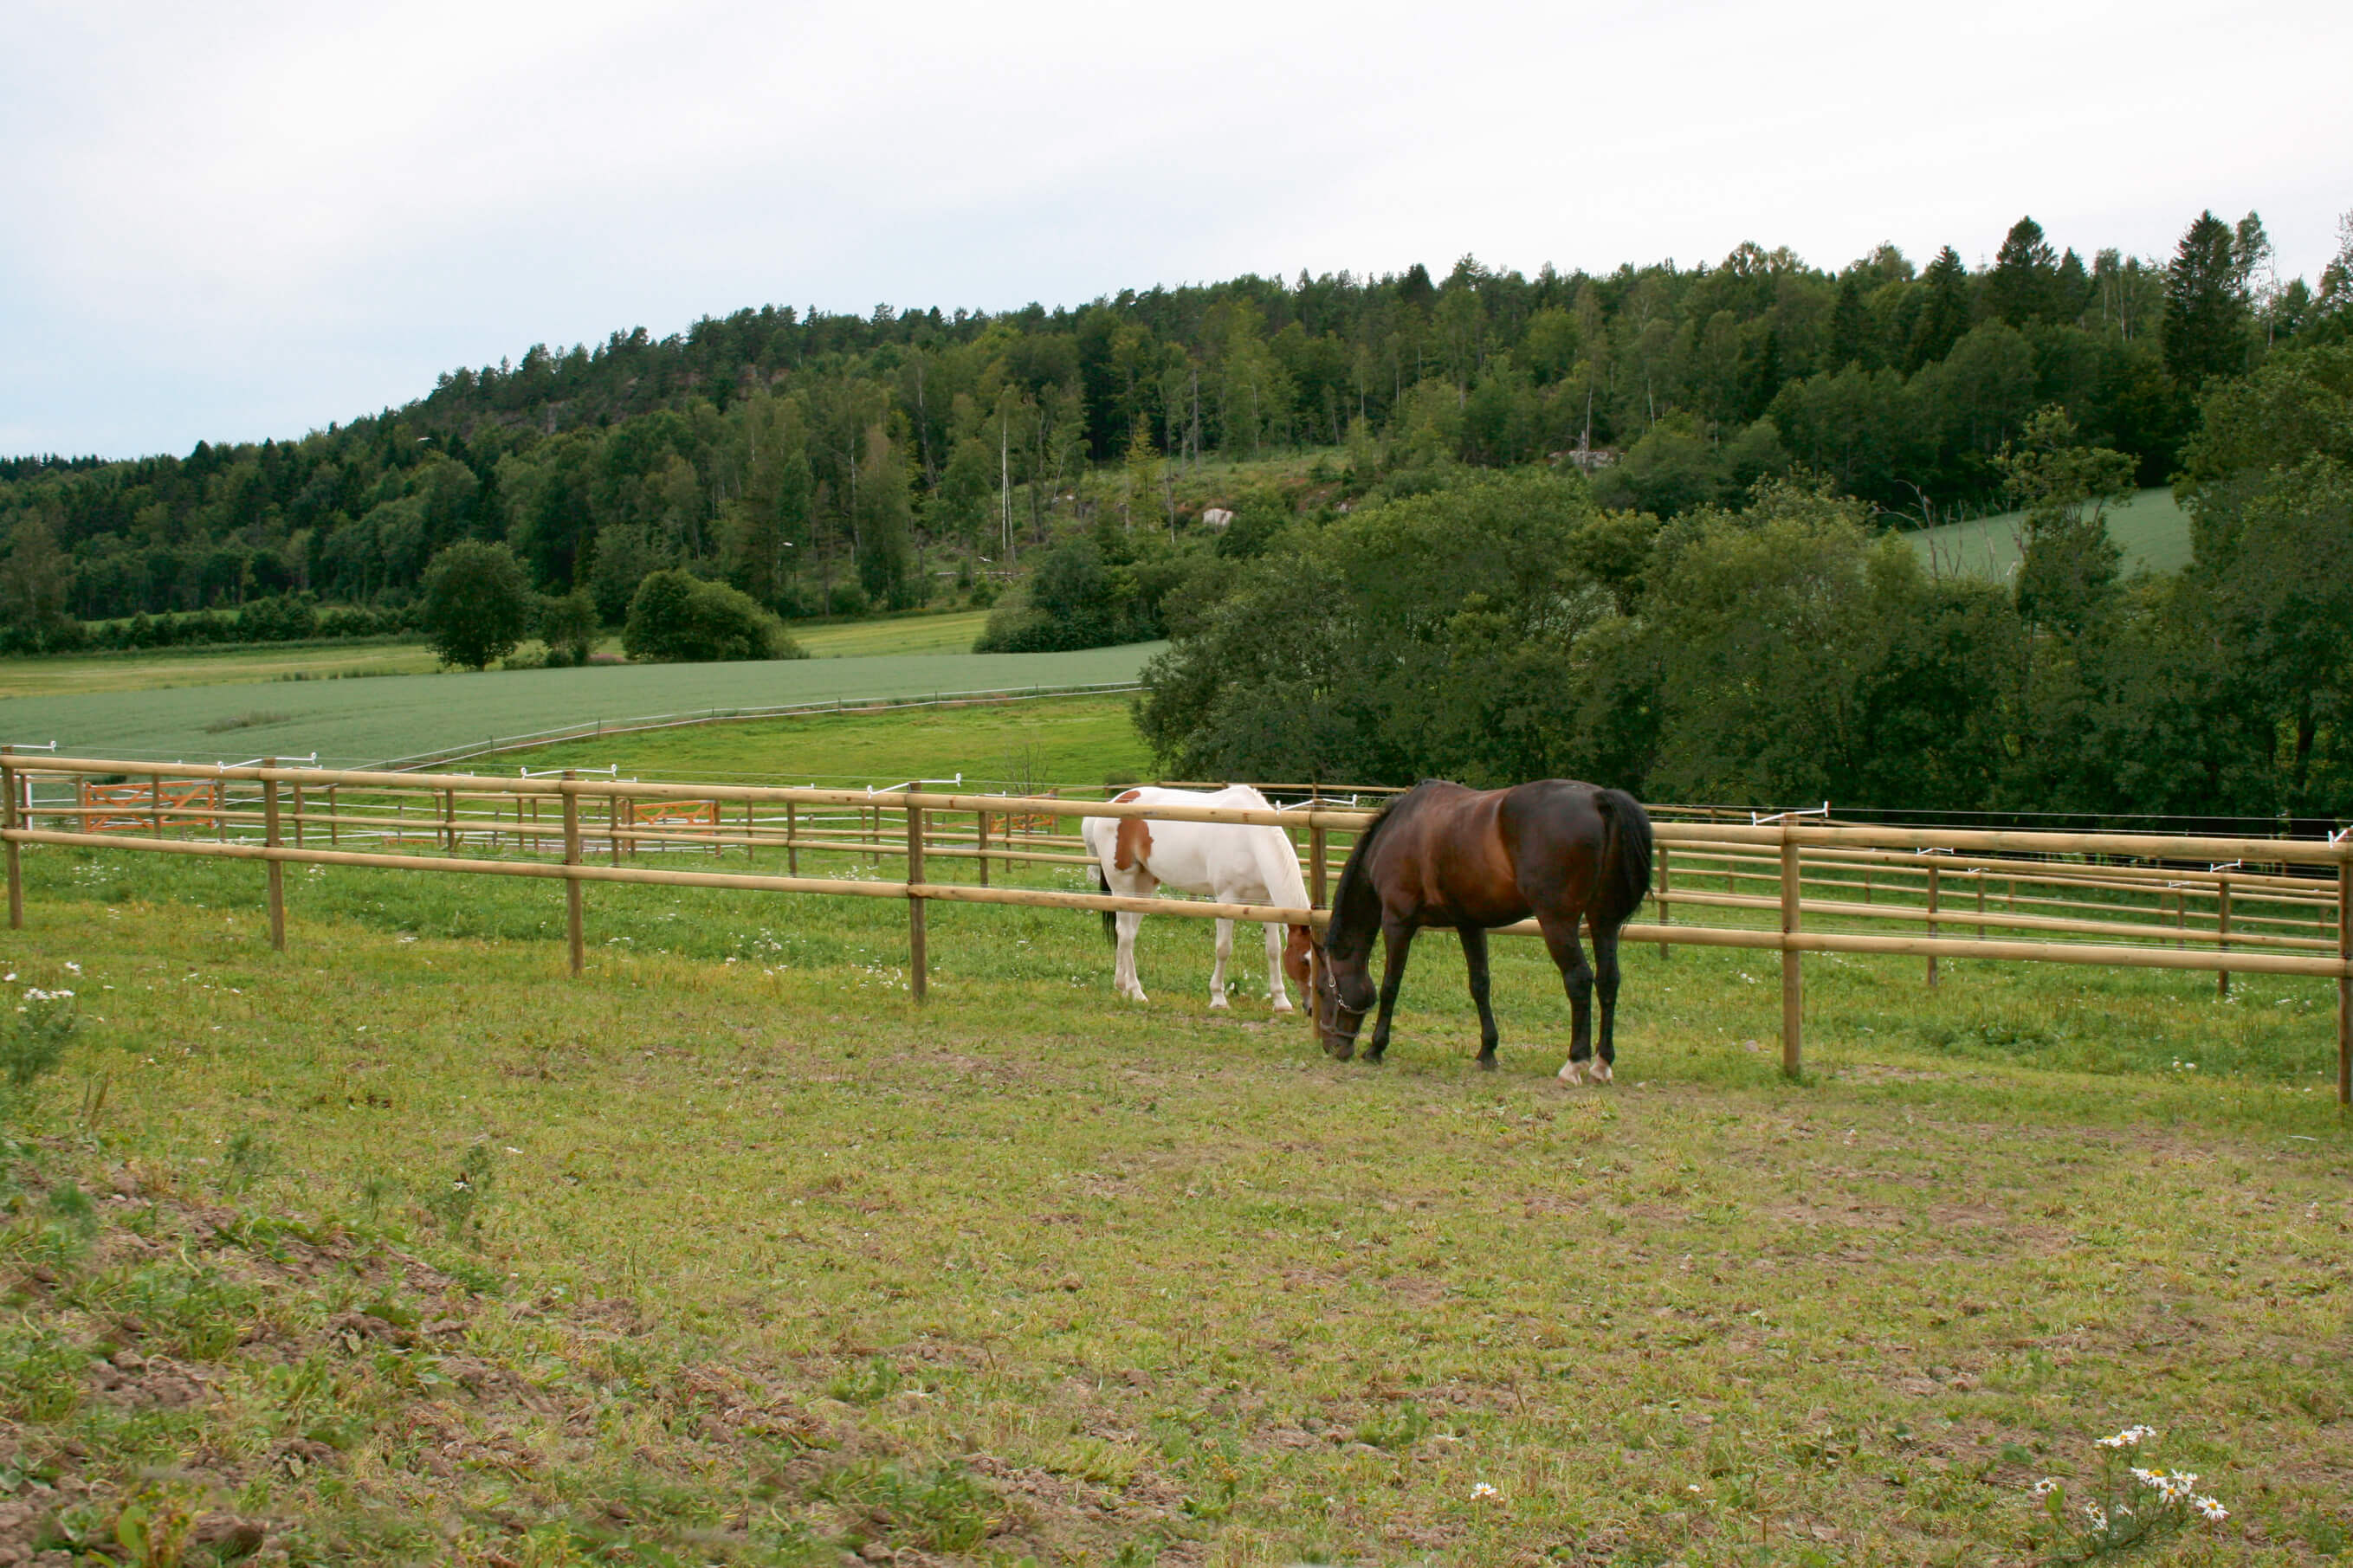 Twee paarden grazen in aparte paddocks. De paardenweiden worden gescheiden door een paardenomheining met half doorgesneden latten.